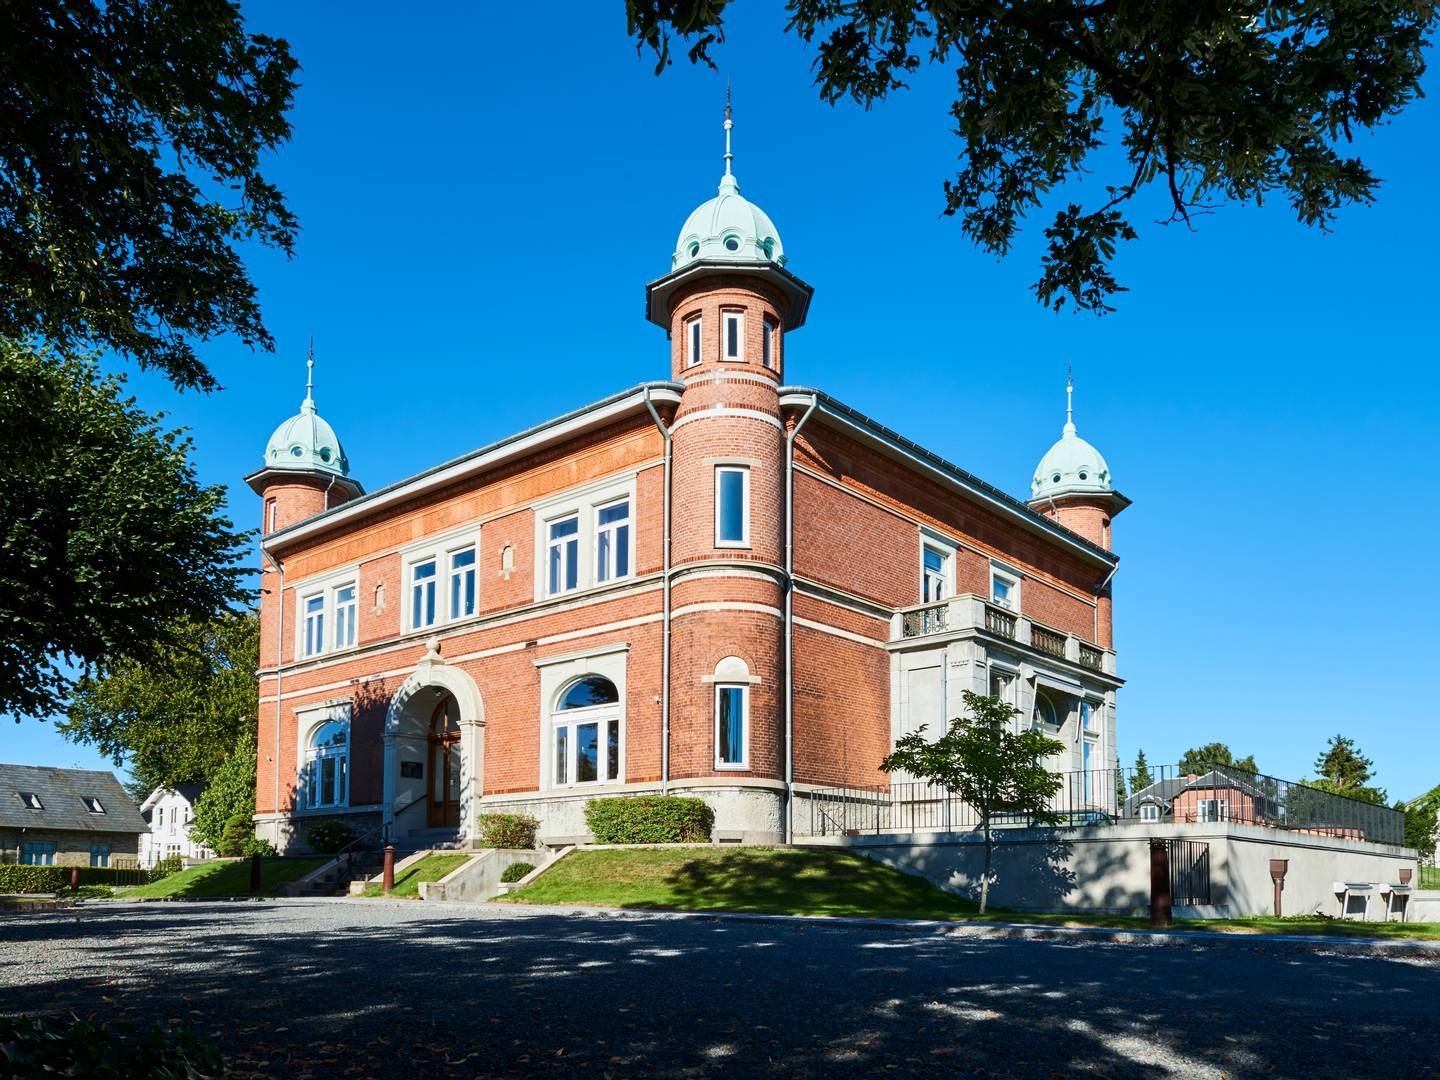 Kielberg Advokater har hovedkontor her på Hunderupvej i Odense. | Foto: Kielberg Advokater / Pr